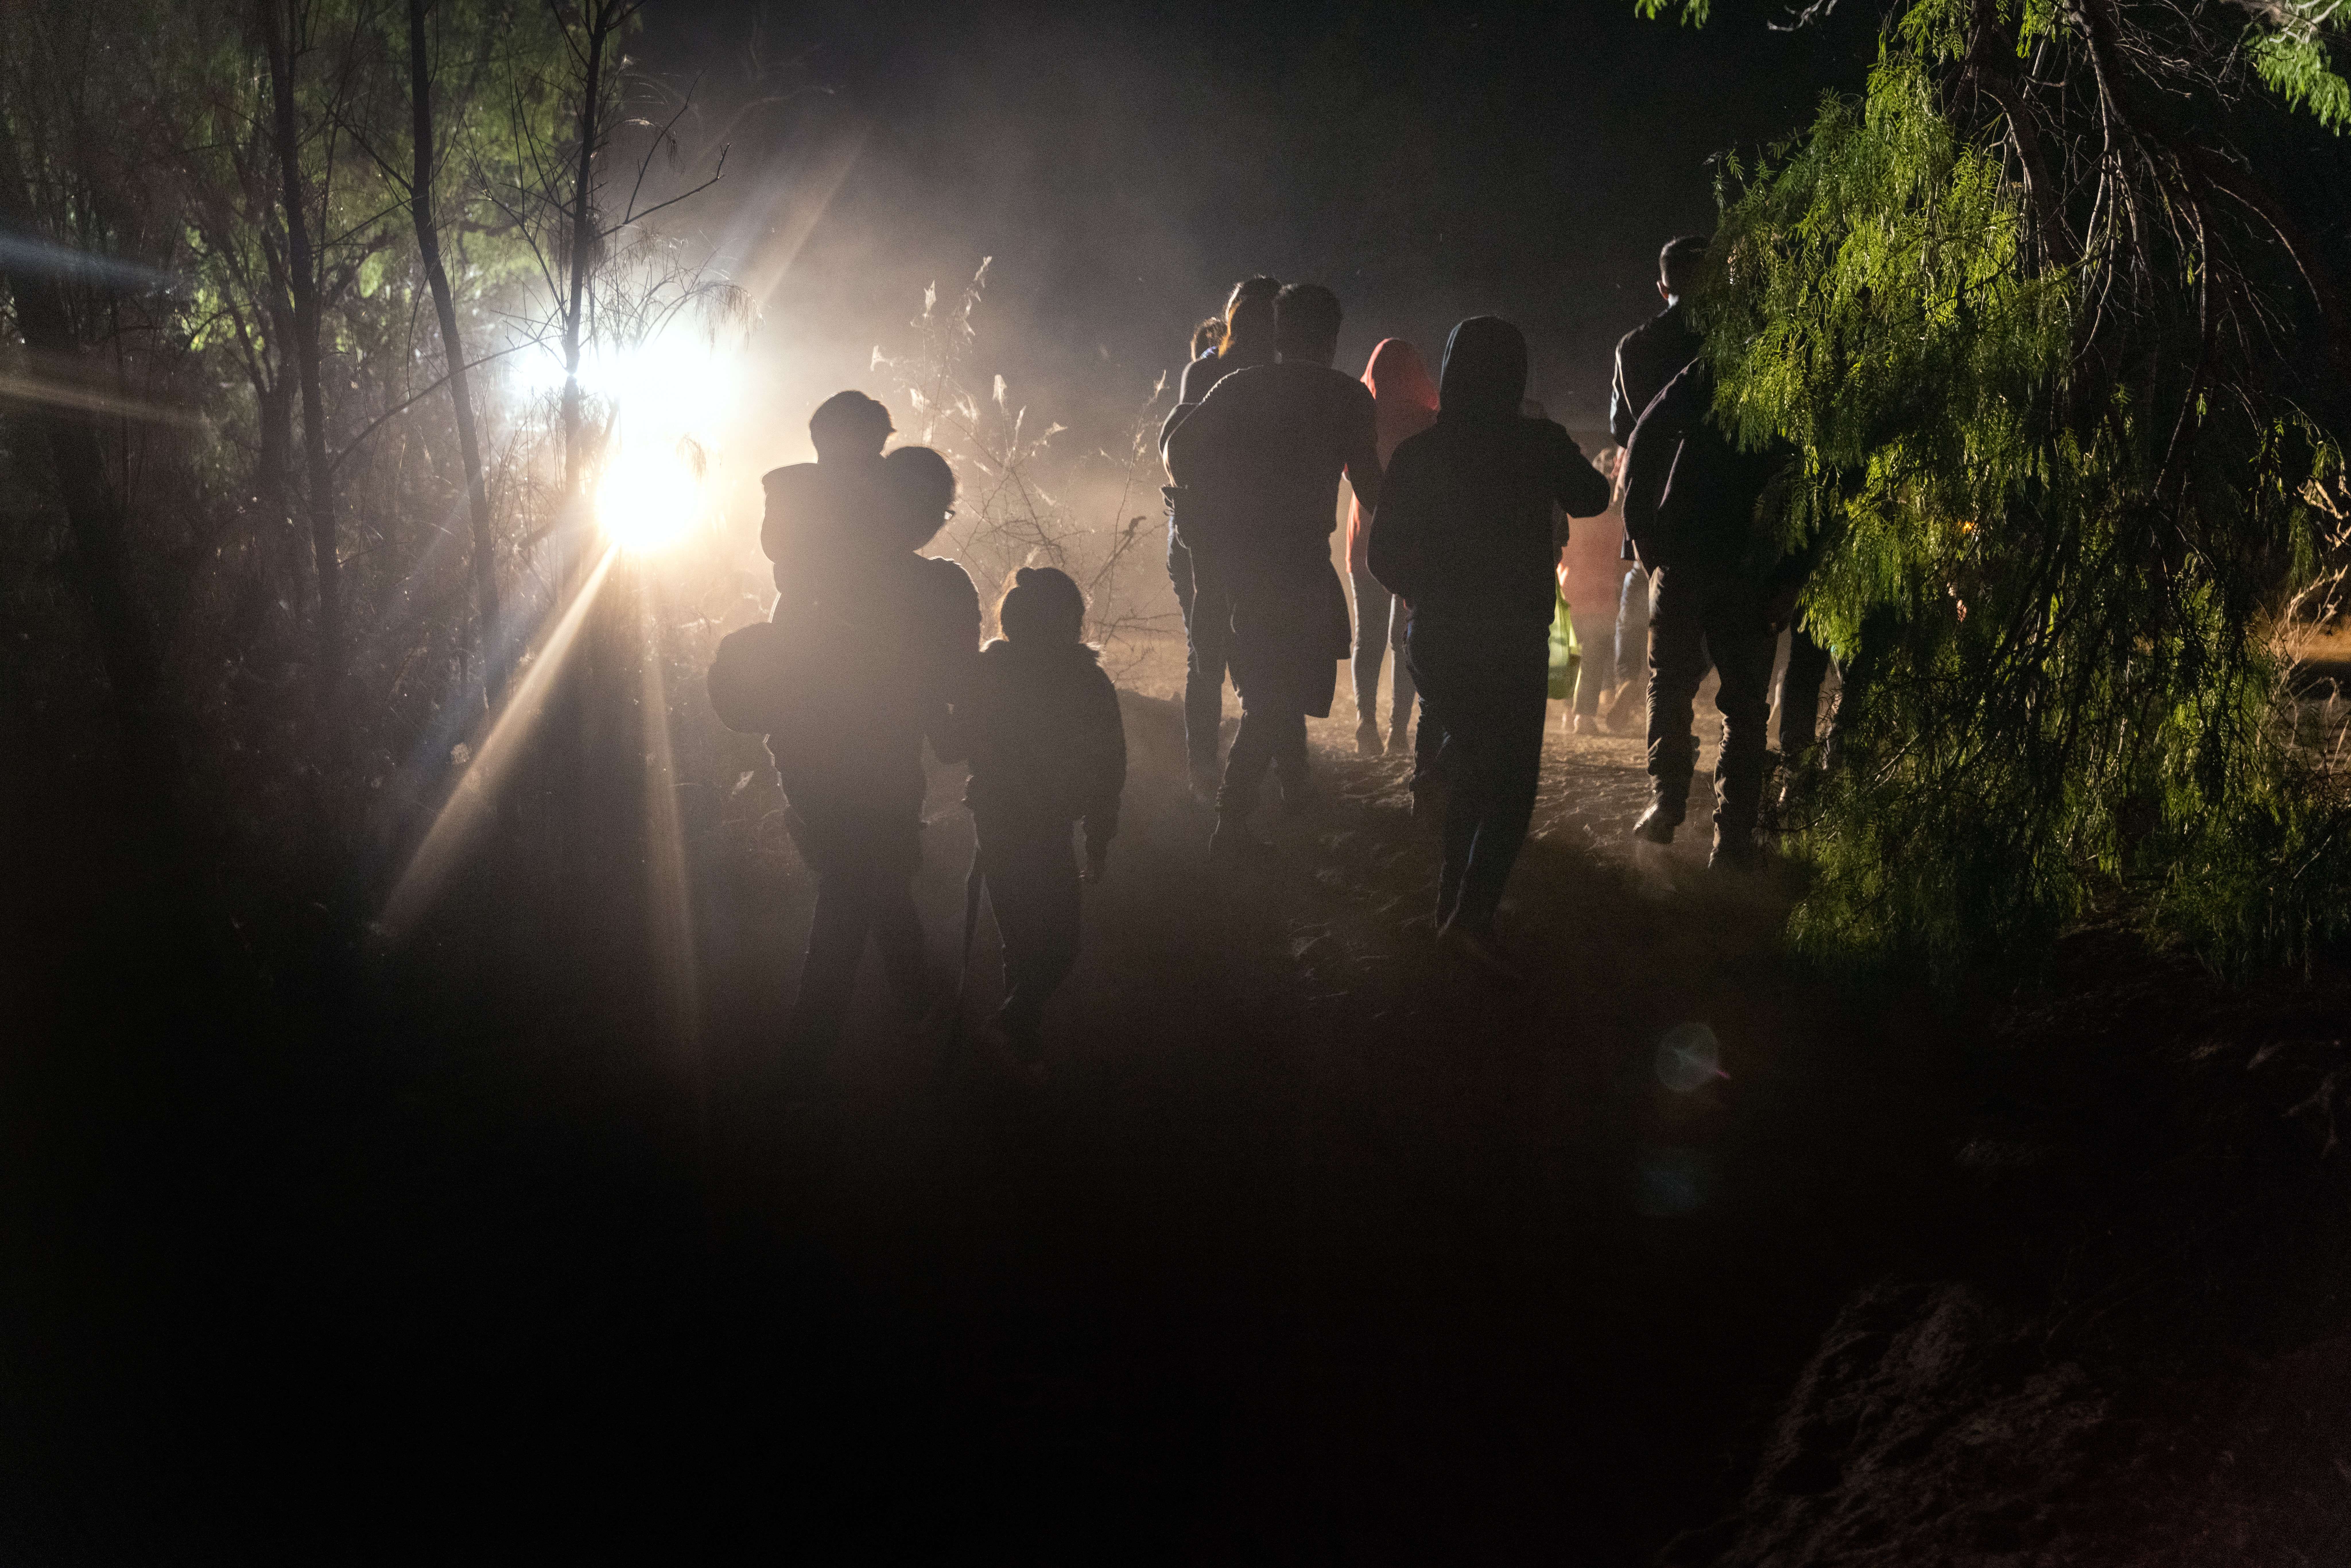 Migrantes caminan hacia los vehículos de la Patrulla Fronteriza de los Estados Unidos después de cruzar la frontera entre Estados Unidos. (Foto Prensa Libre: AFP)